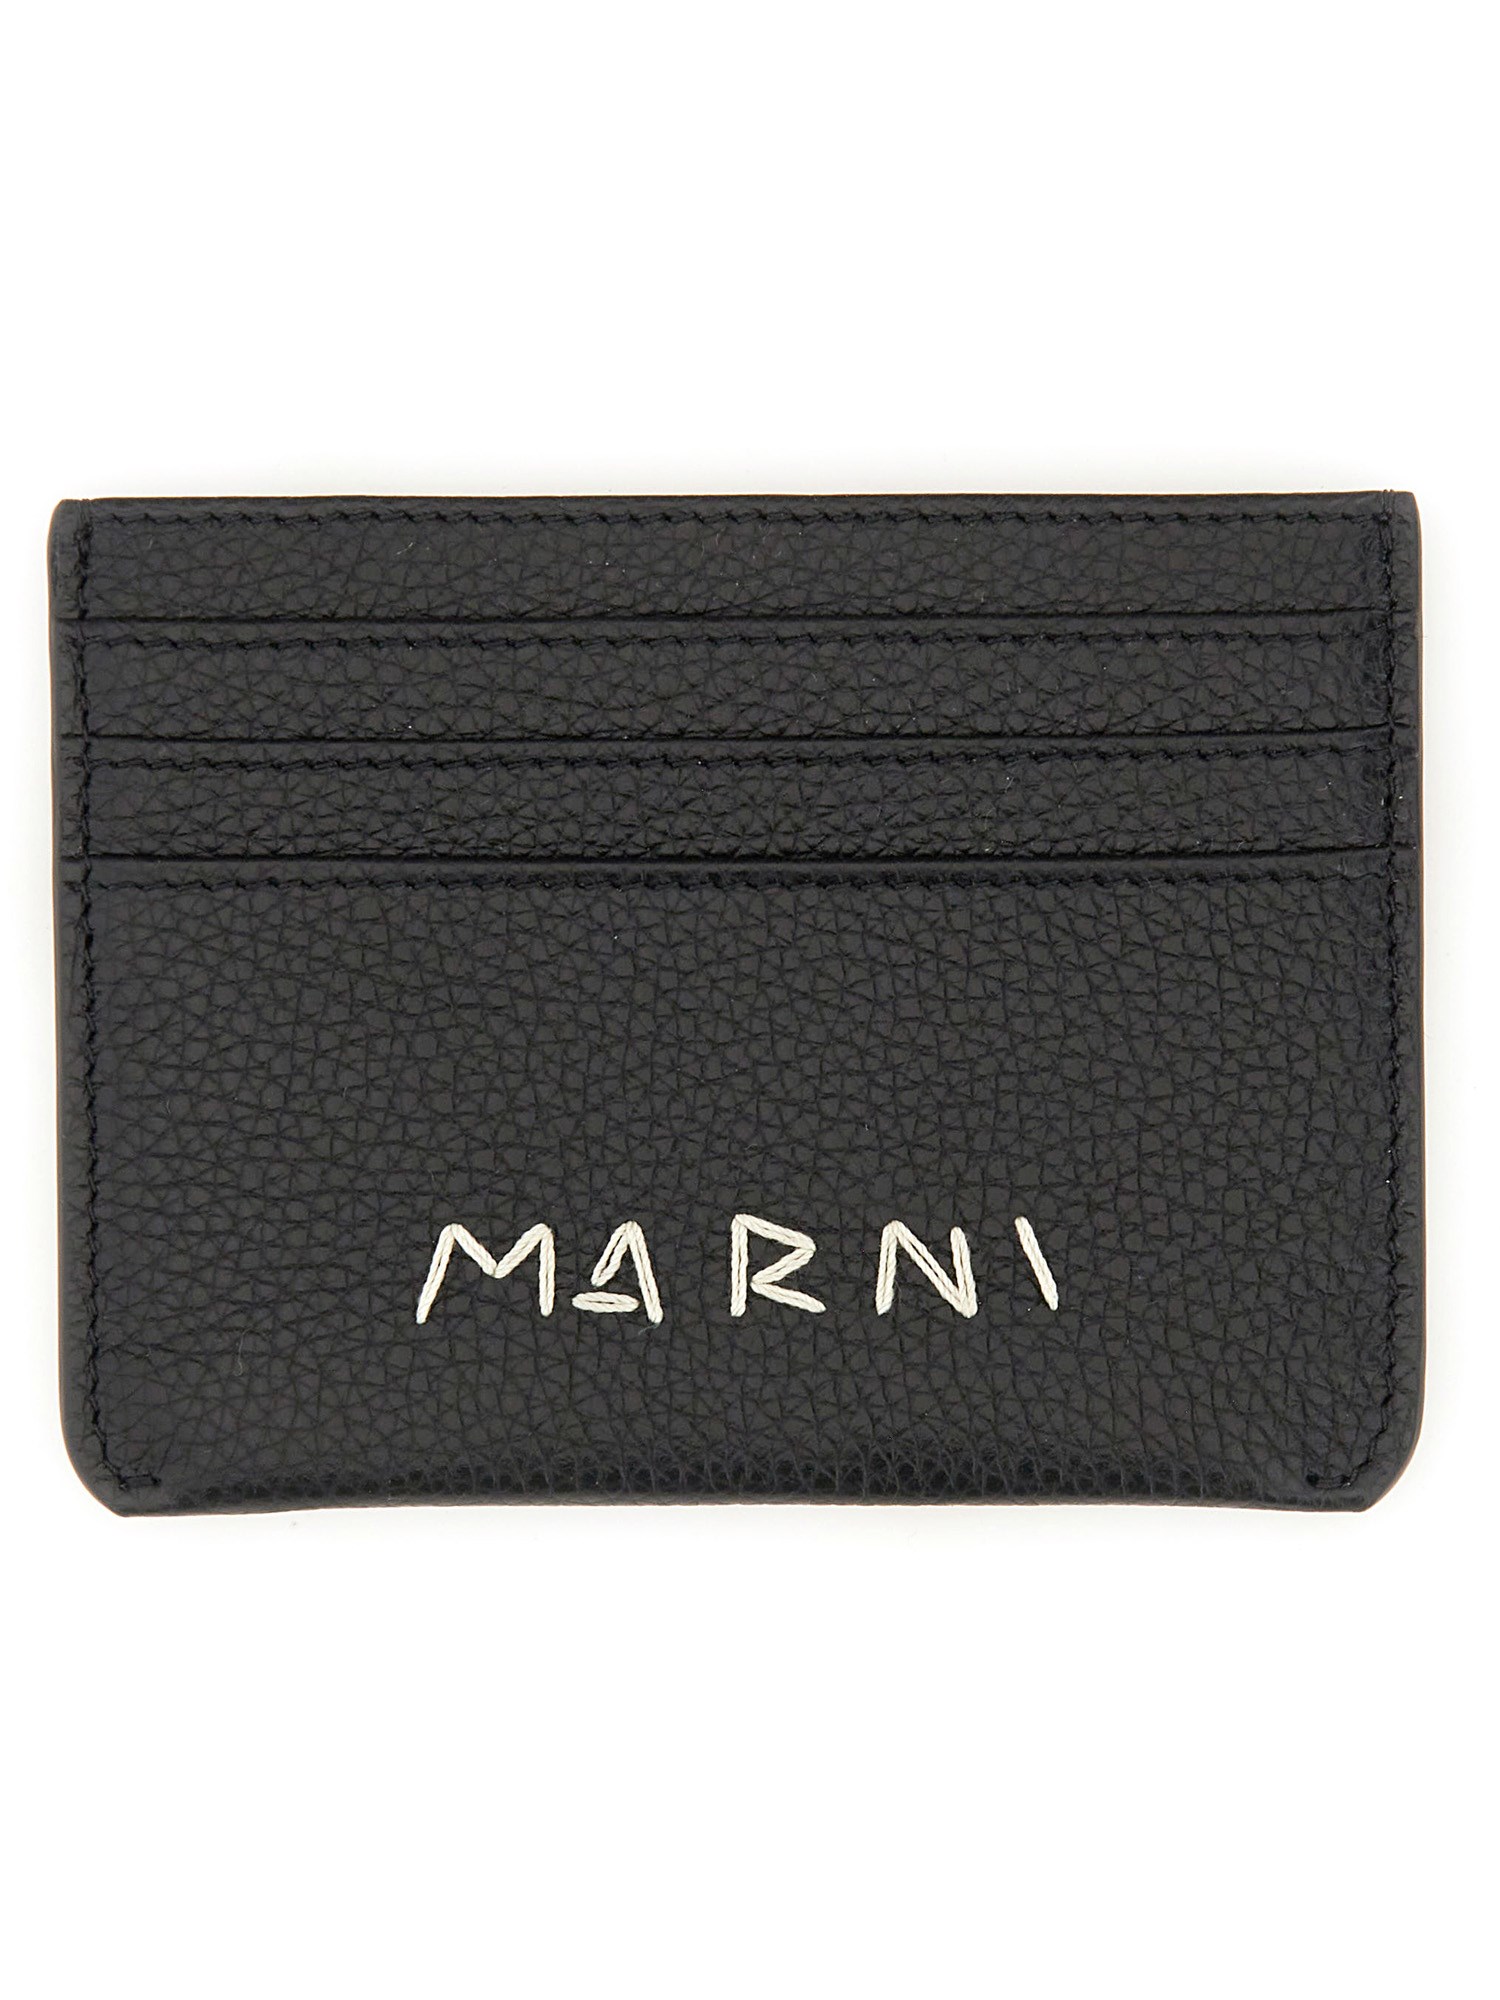 Marni marni card holder with logo darning